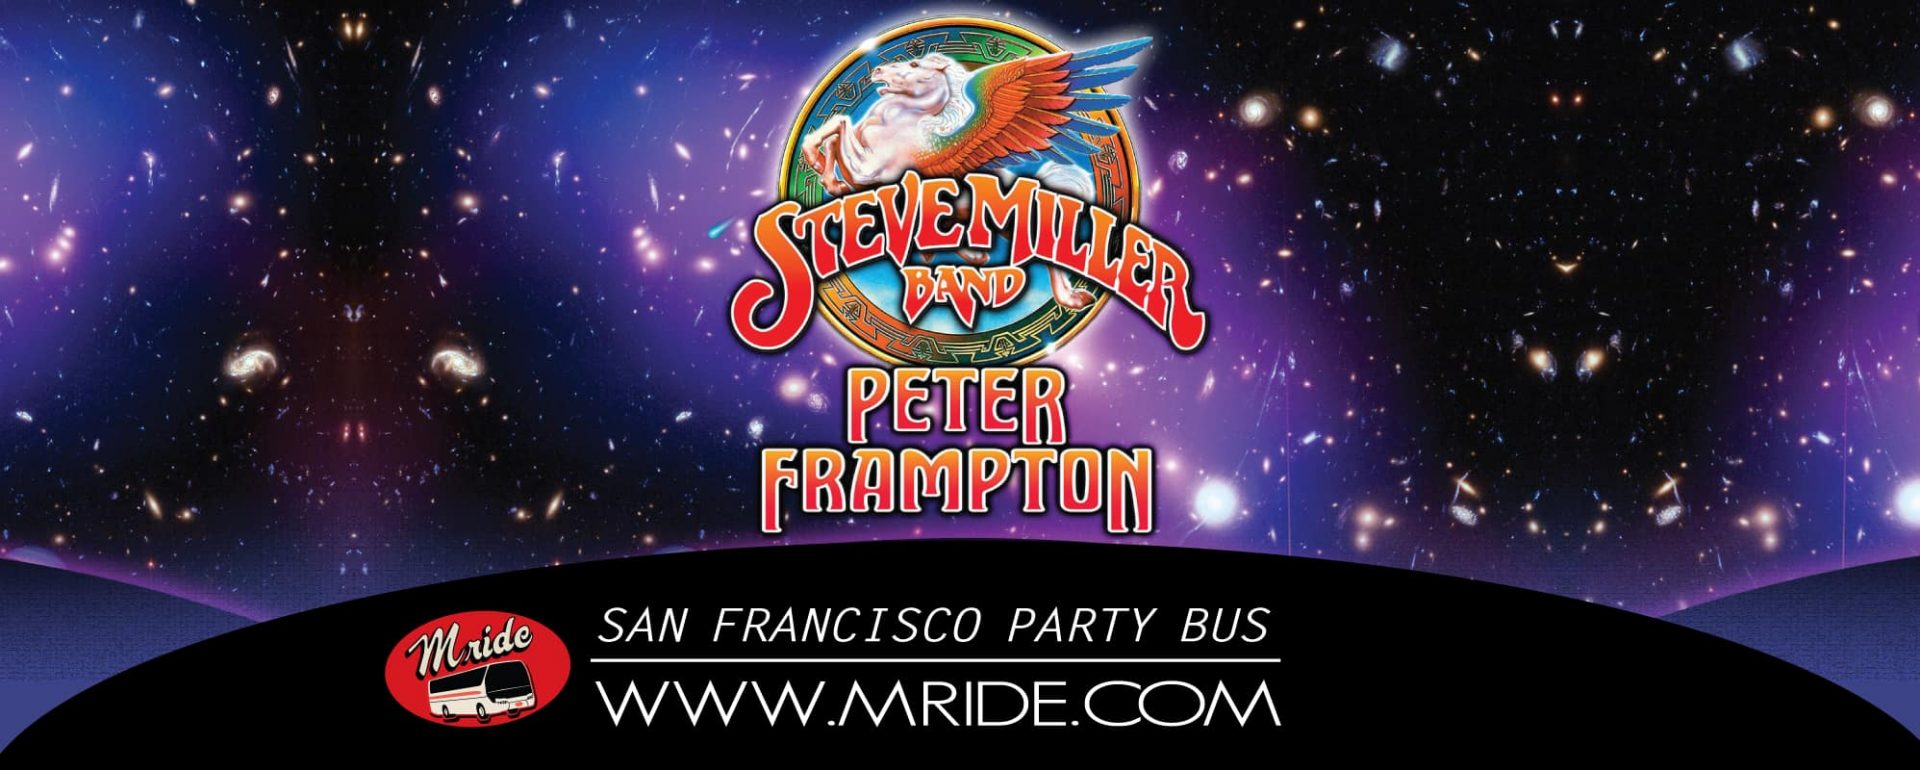 Steve Miller Band Peter Frampton